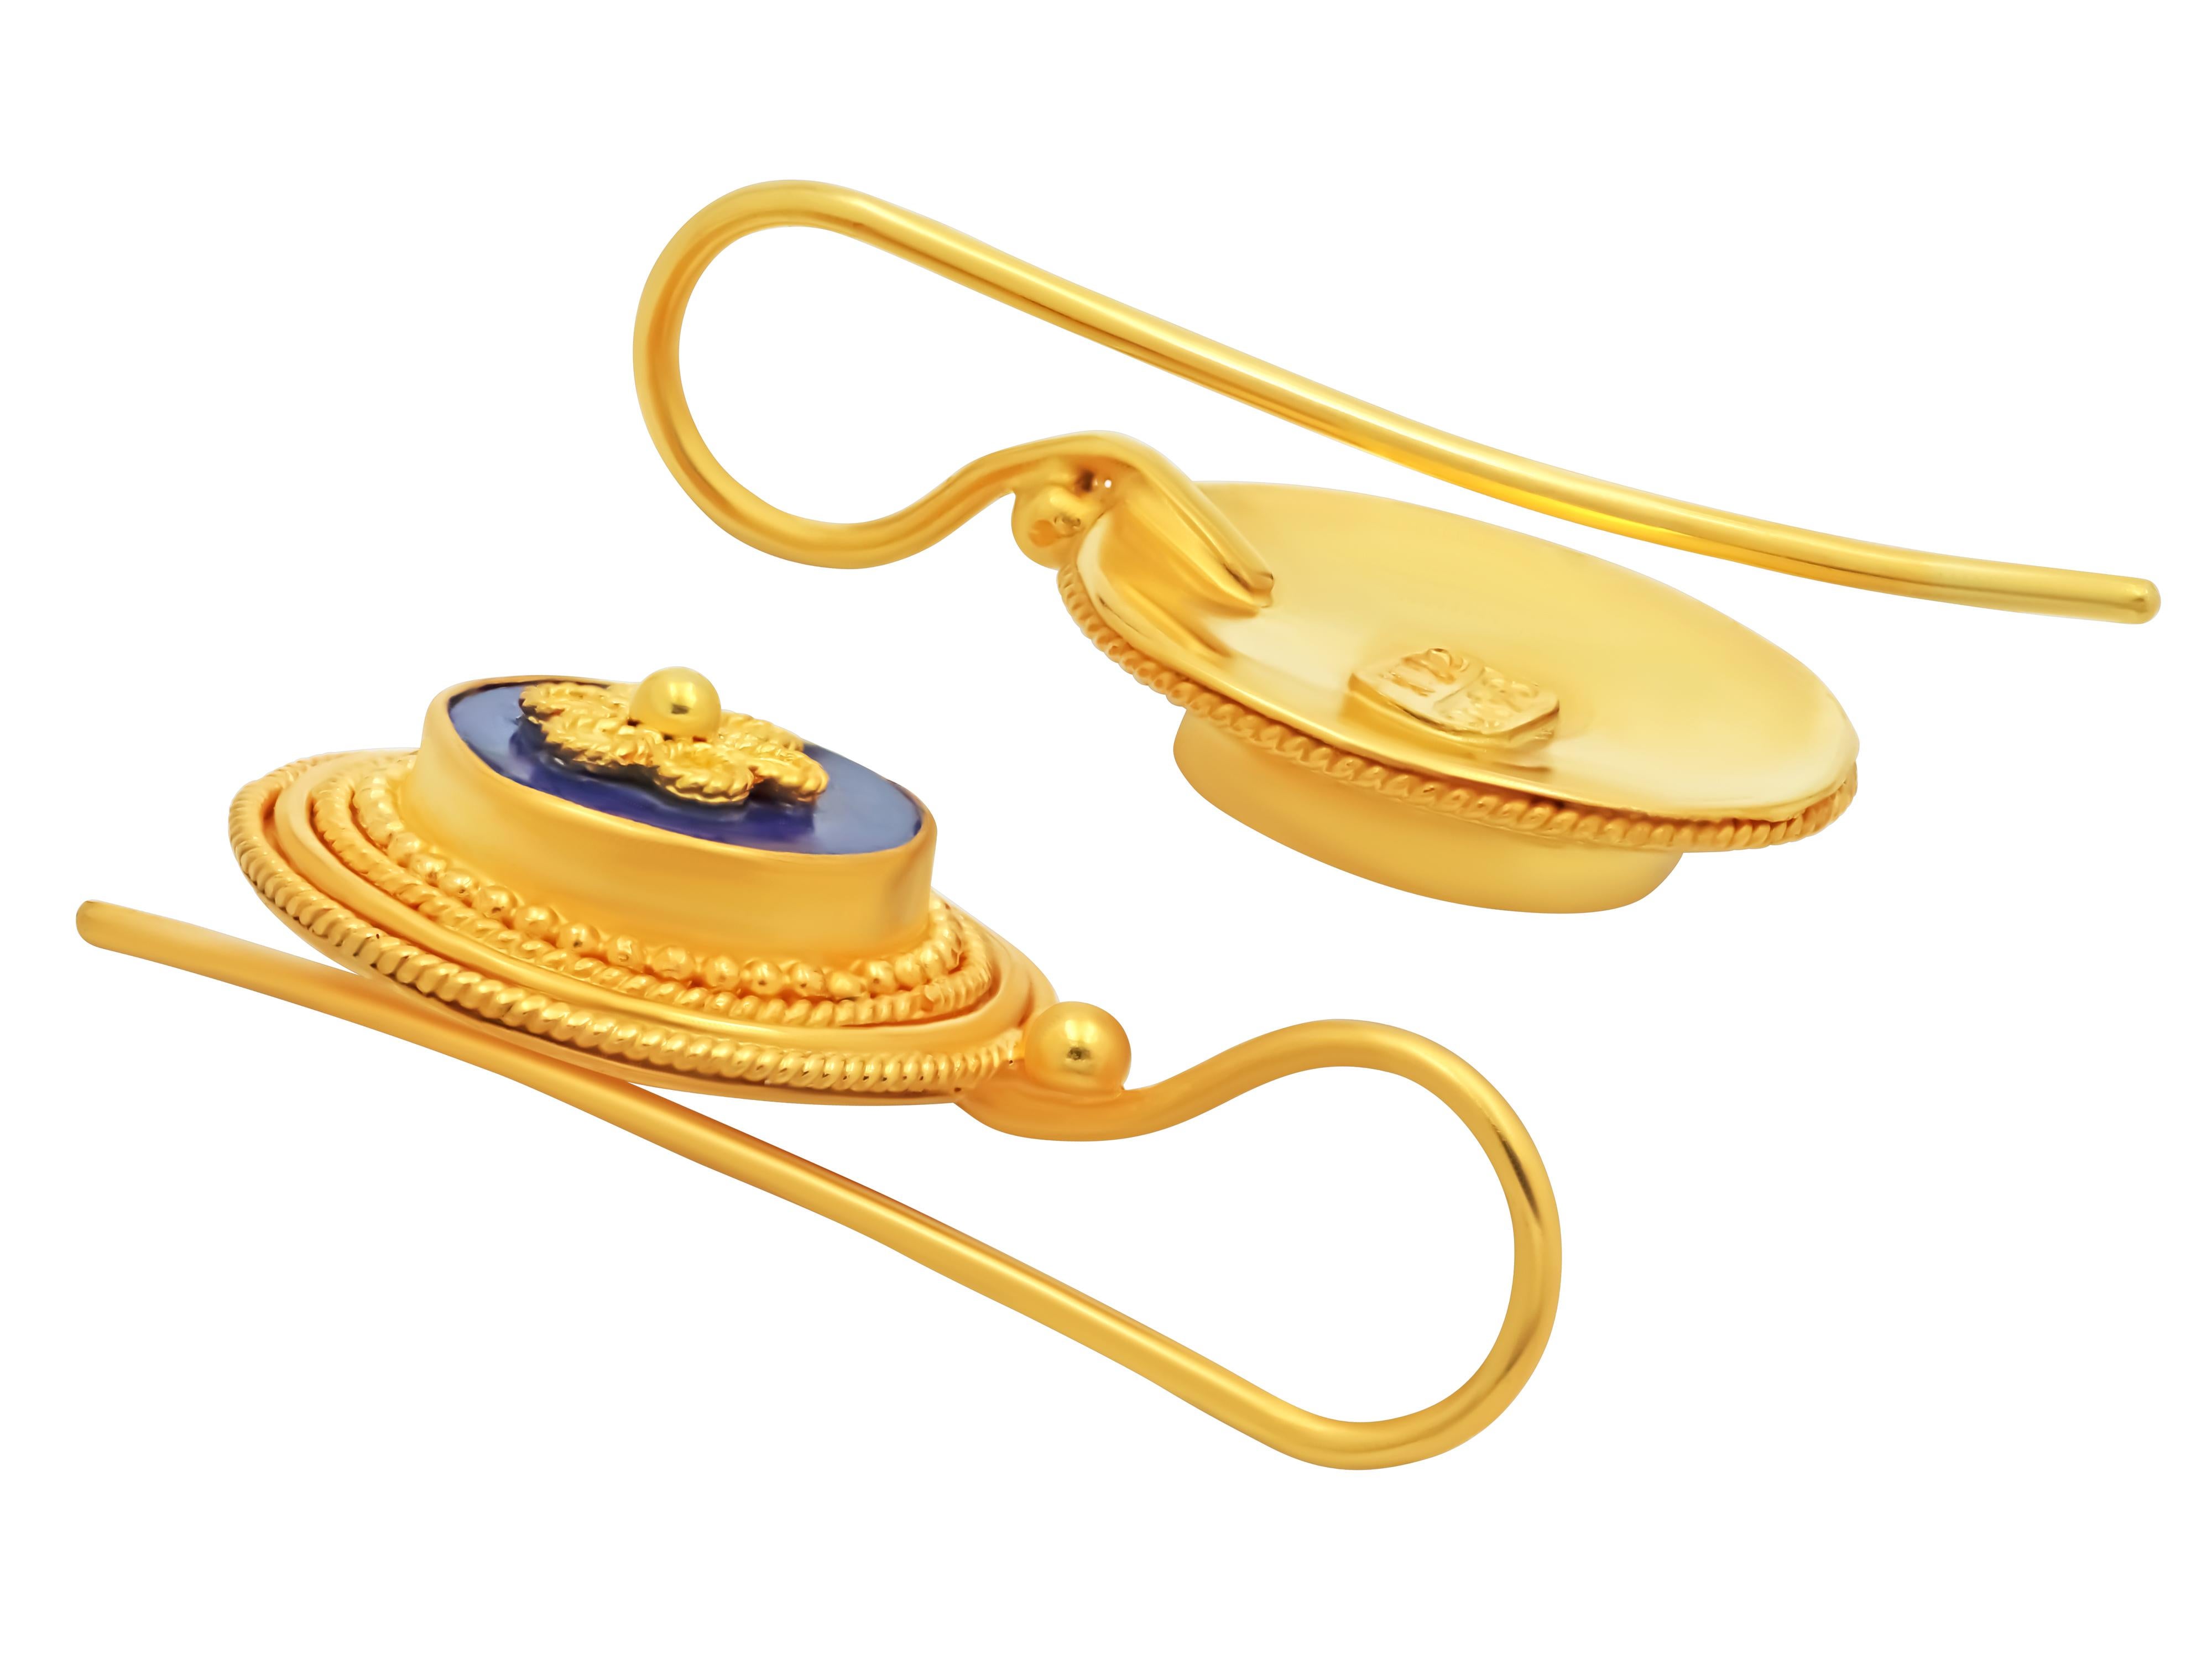 Neoklassische Ohrringe aus 22k Gold. Einer der elegantesten Ohrringe, der auch einer Ihrer Lieblingsohrringe werden wird. Ein perfekter Kreis aus Filigranen, Granulat und Lapislazuli passt zu jedem Outfit, vom Anzug bis zur Jeans.